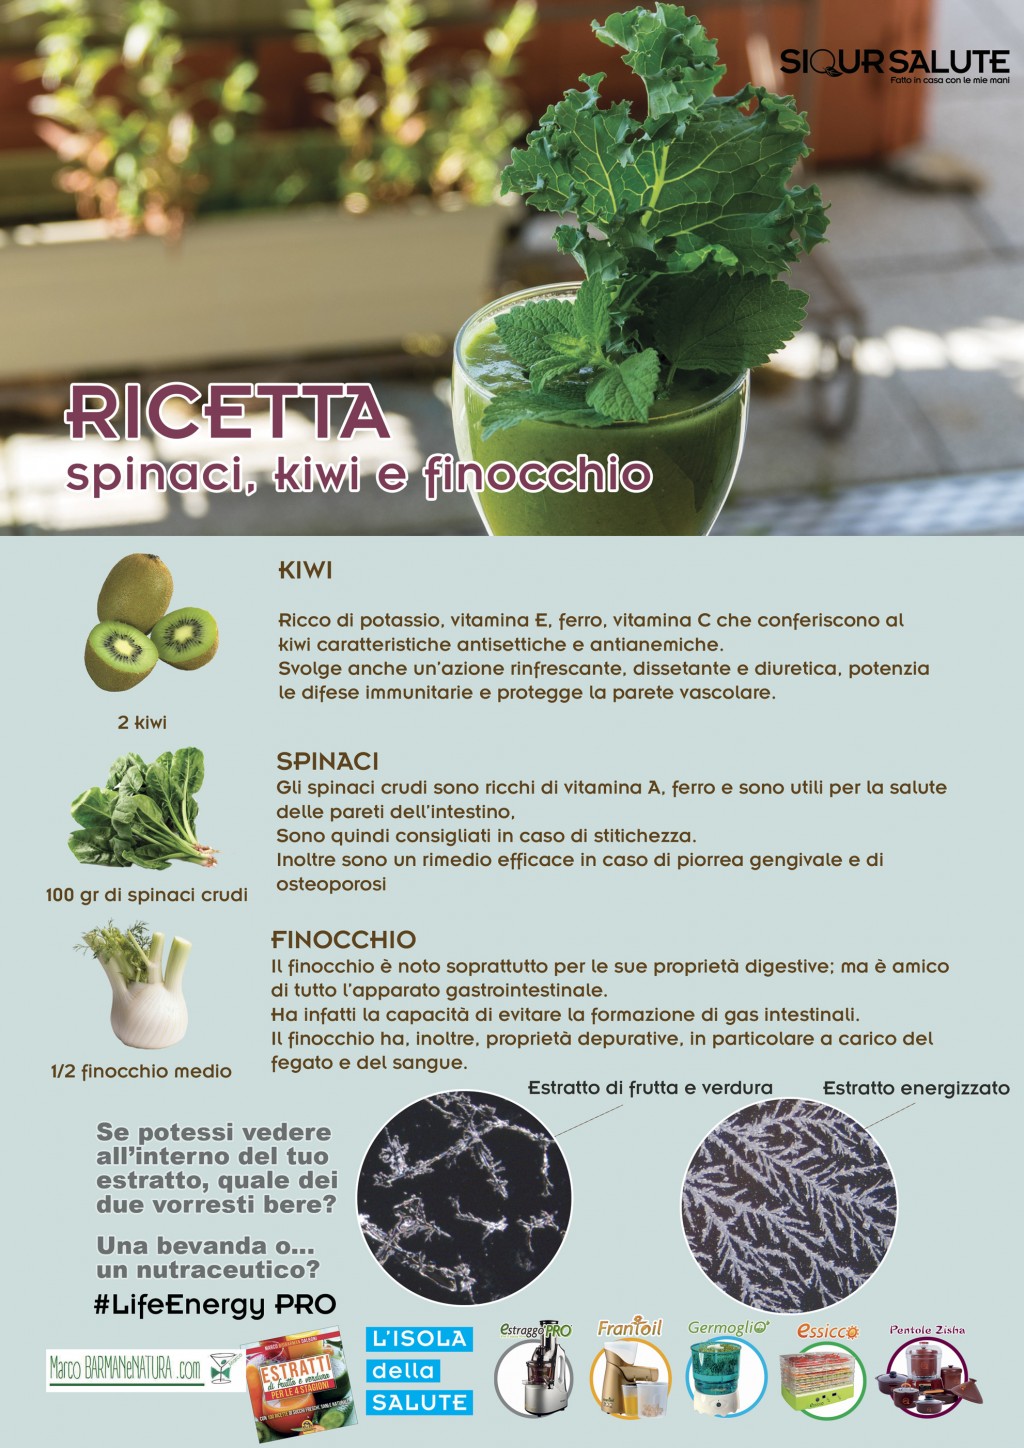 Le incredibili proprietà dell'estratto di spinaci che forse non conoscevi